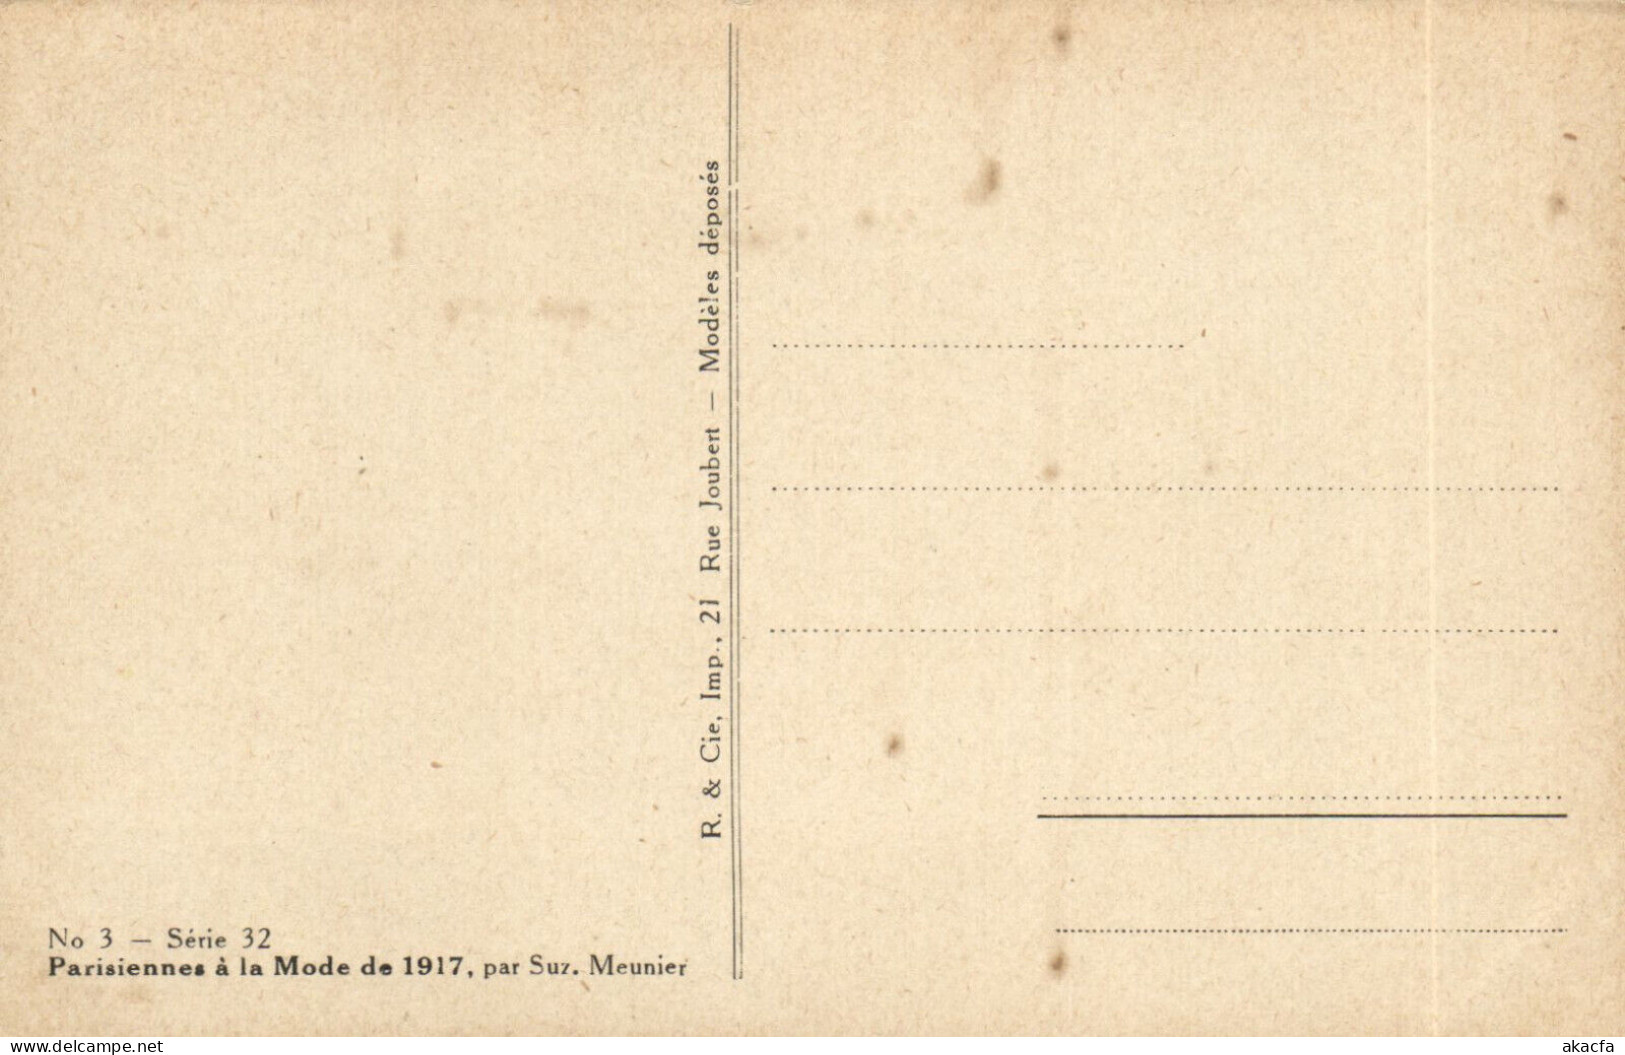 PC ARTIST SIGNED, MEUNIER, PARISIENNES Á LA MODE, Vintage Postcard (b50628) - Meunier, S.